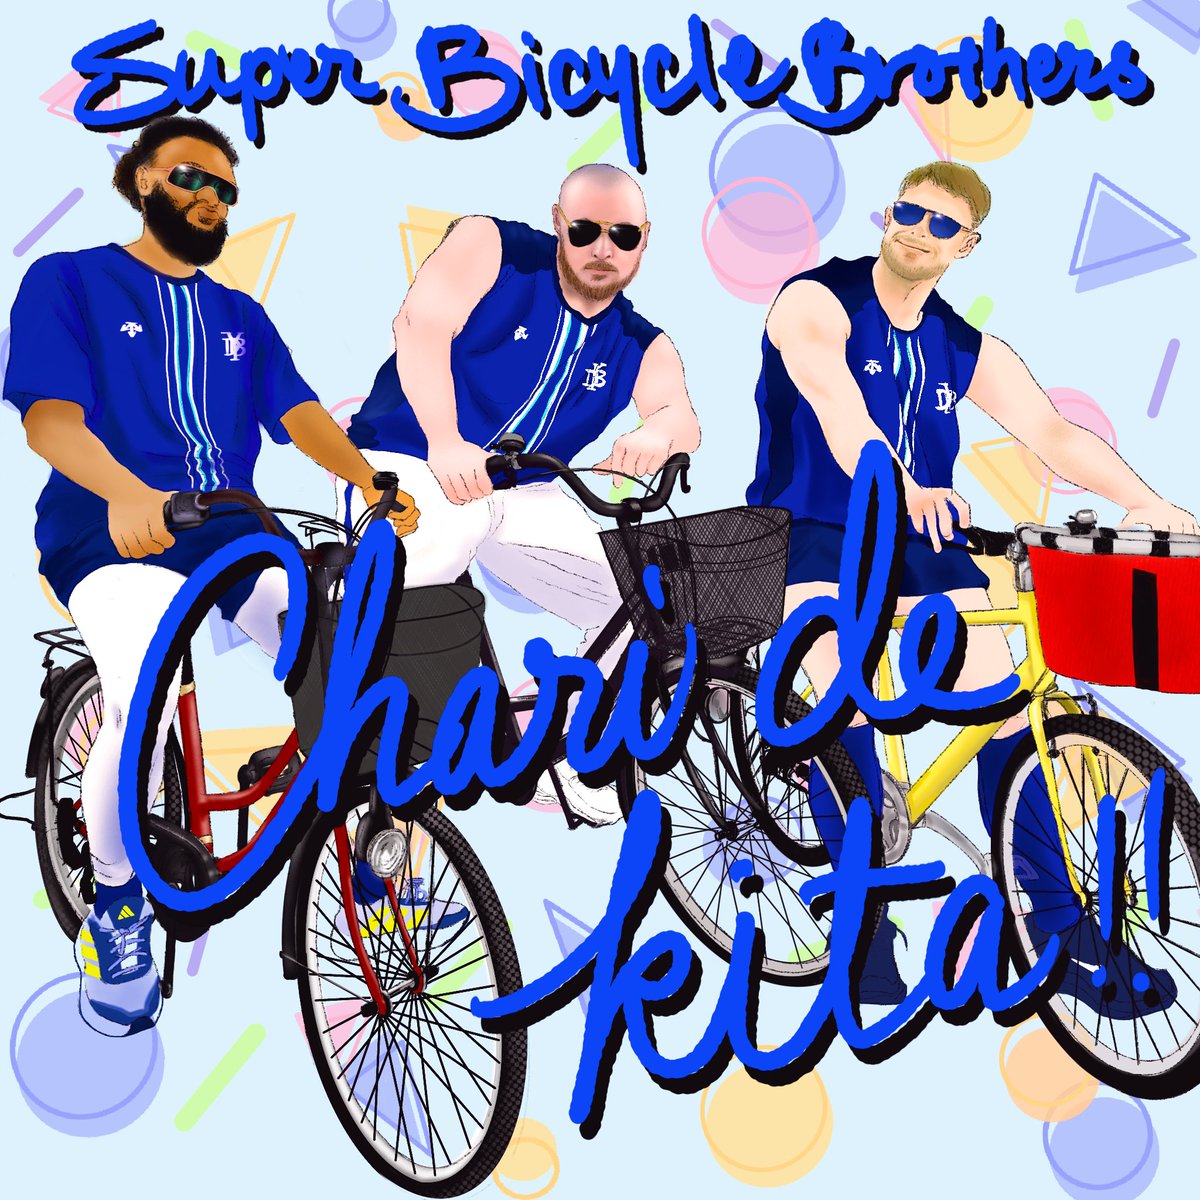 SUPER BICYCLE BROTHERS
#jbwendelken
#ウェンデルケン 
#andrejackson
#アンドレジャクソン 
#rowanwick 
#ローワンウイック
#baystars
#ベイスターズ